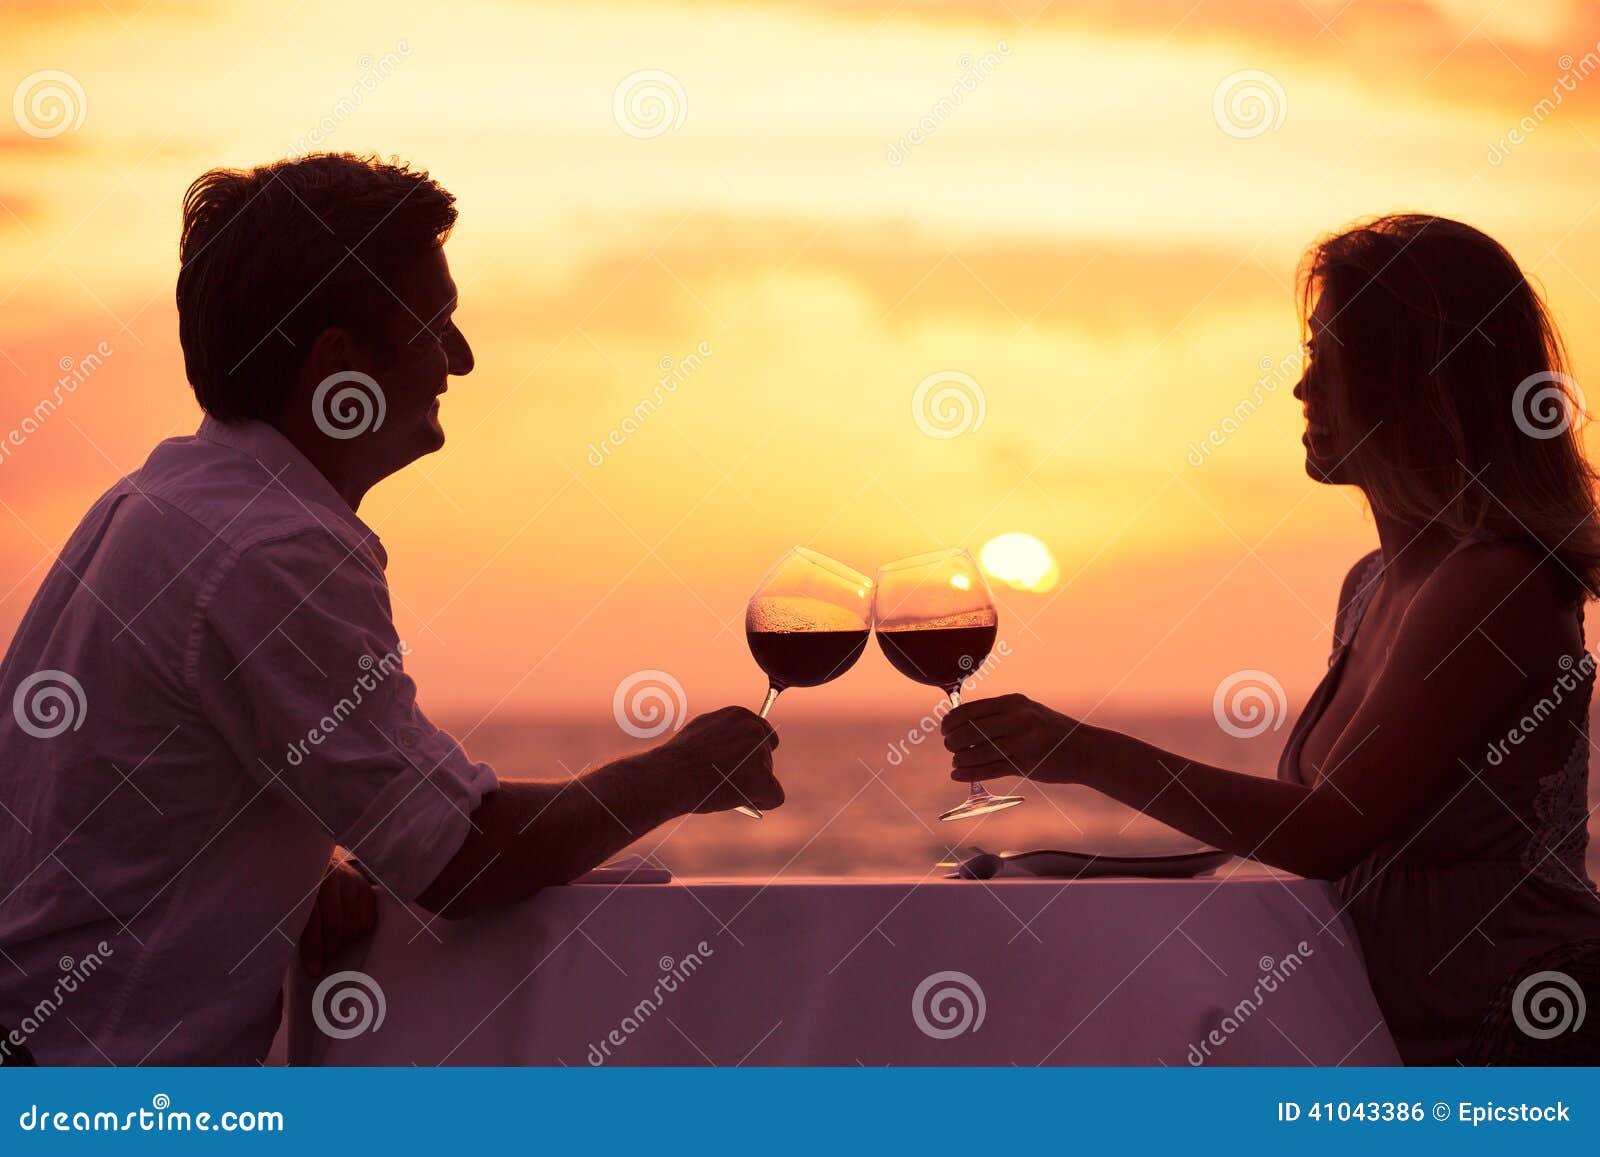 couple enjoying romantic sunnset dinner